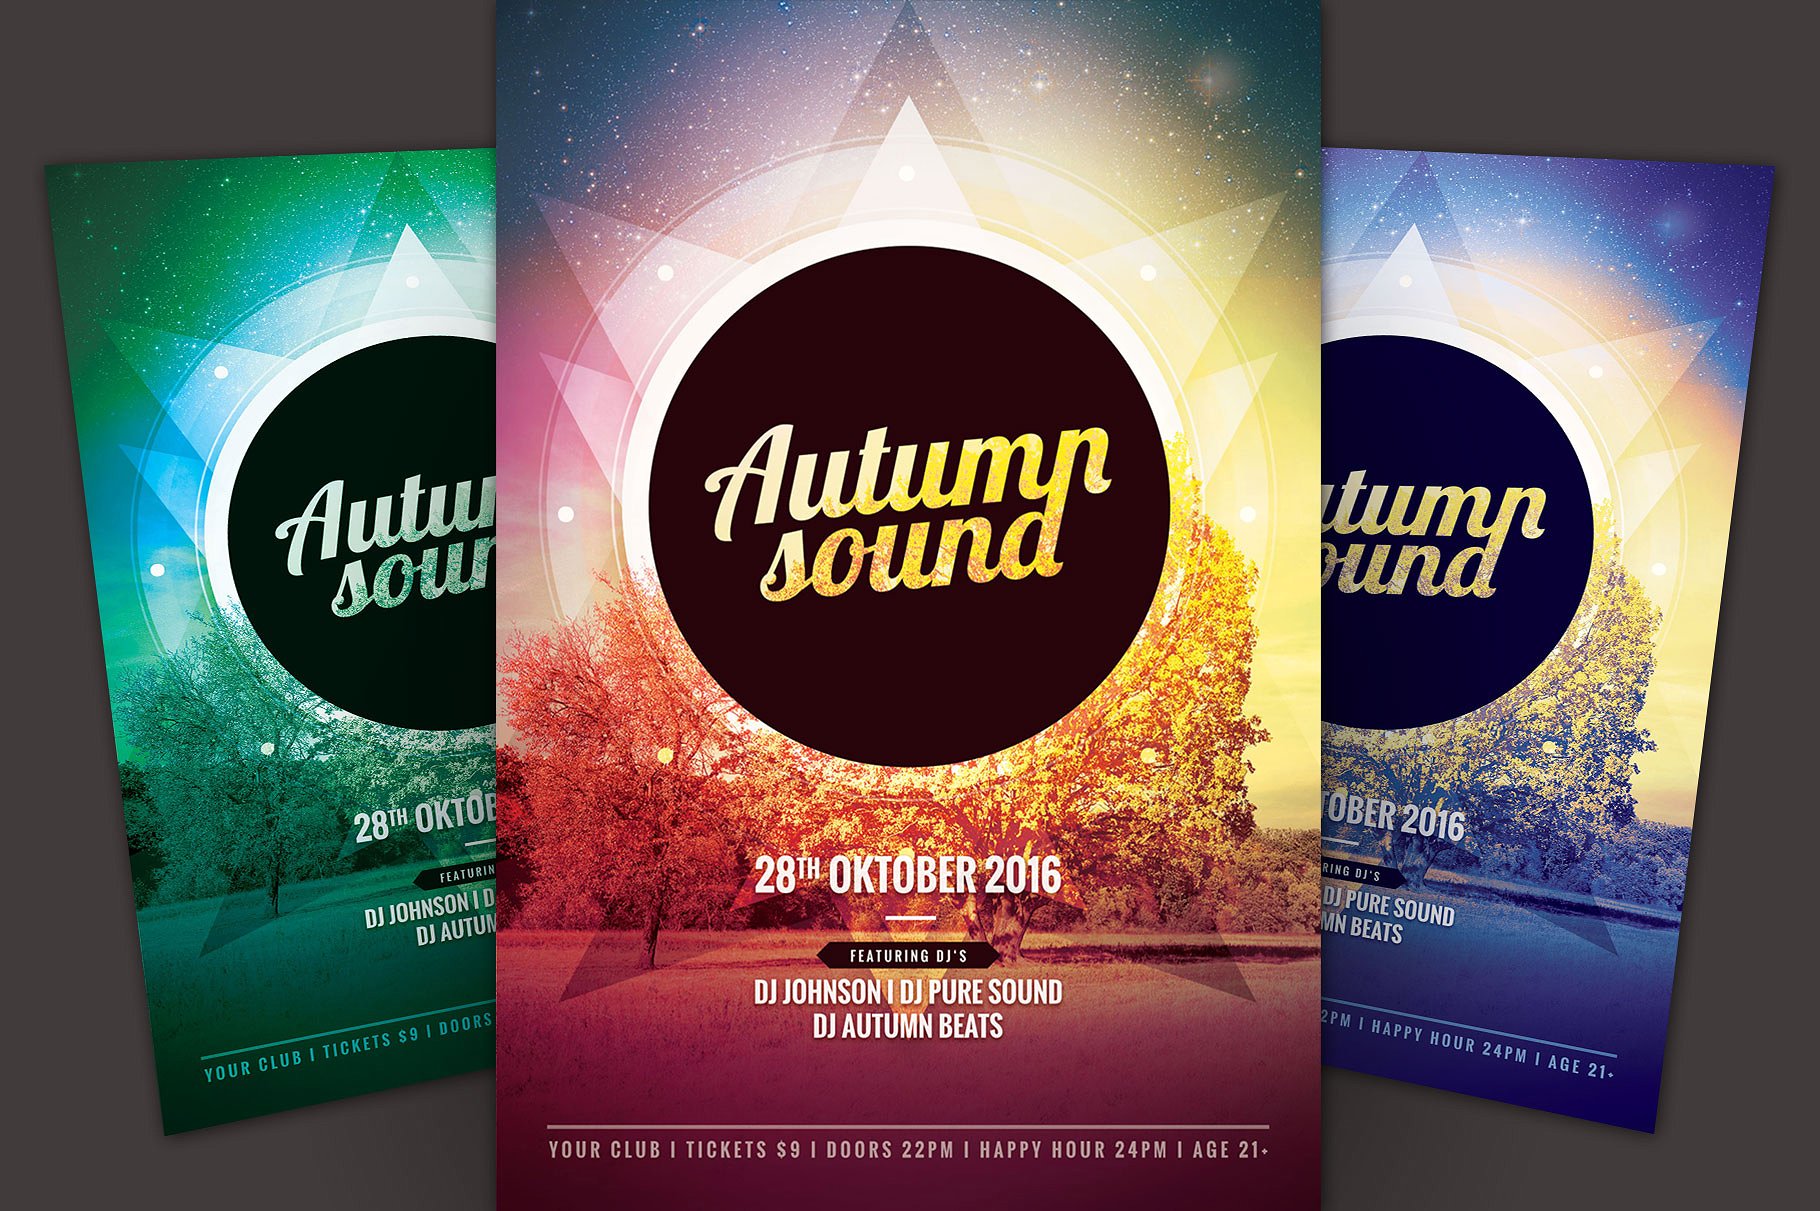 秋季音乐节活动海报设计模板 Autumn Sound Flyer Template插图